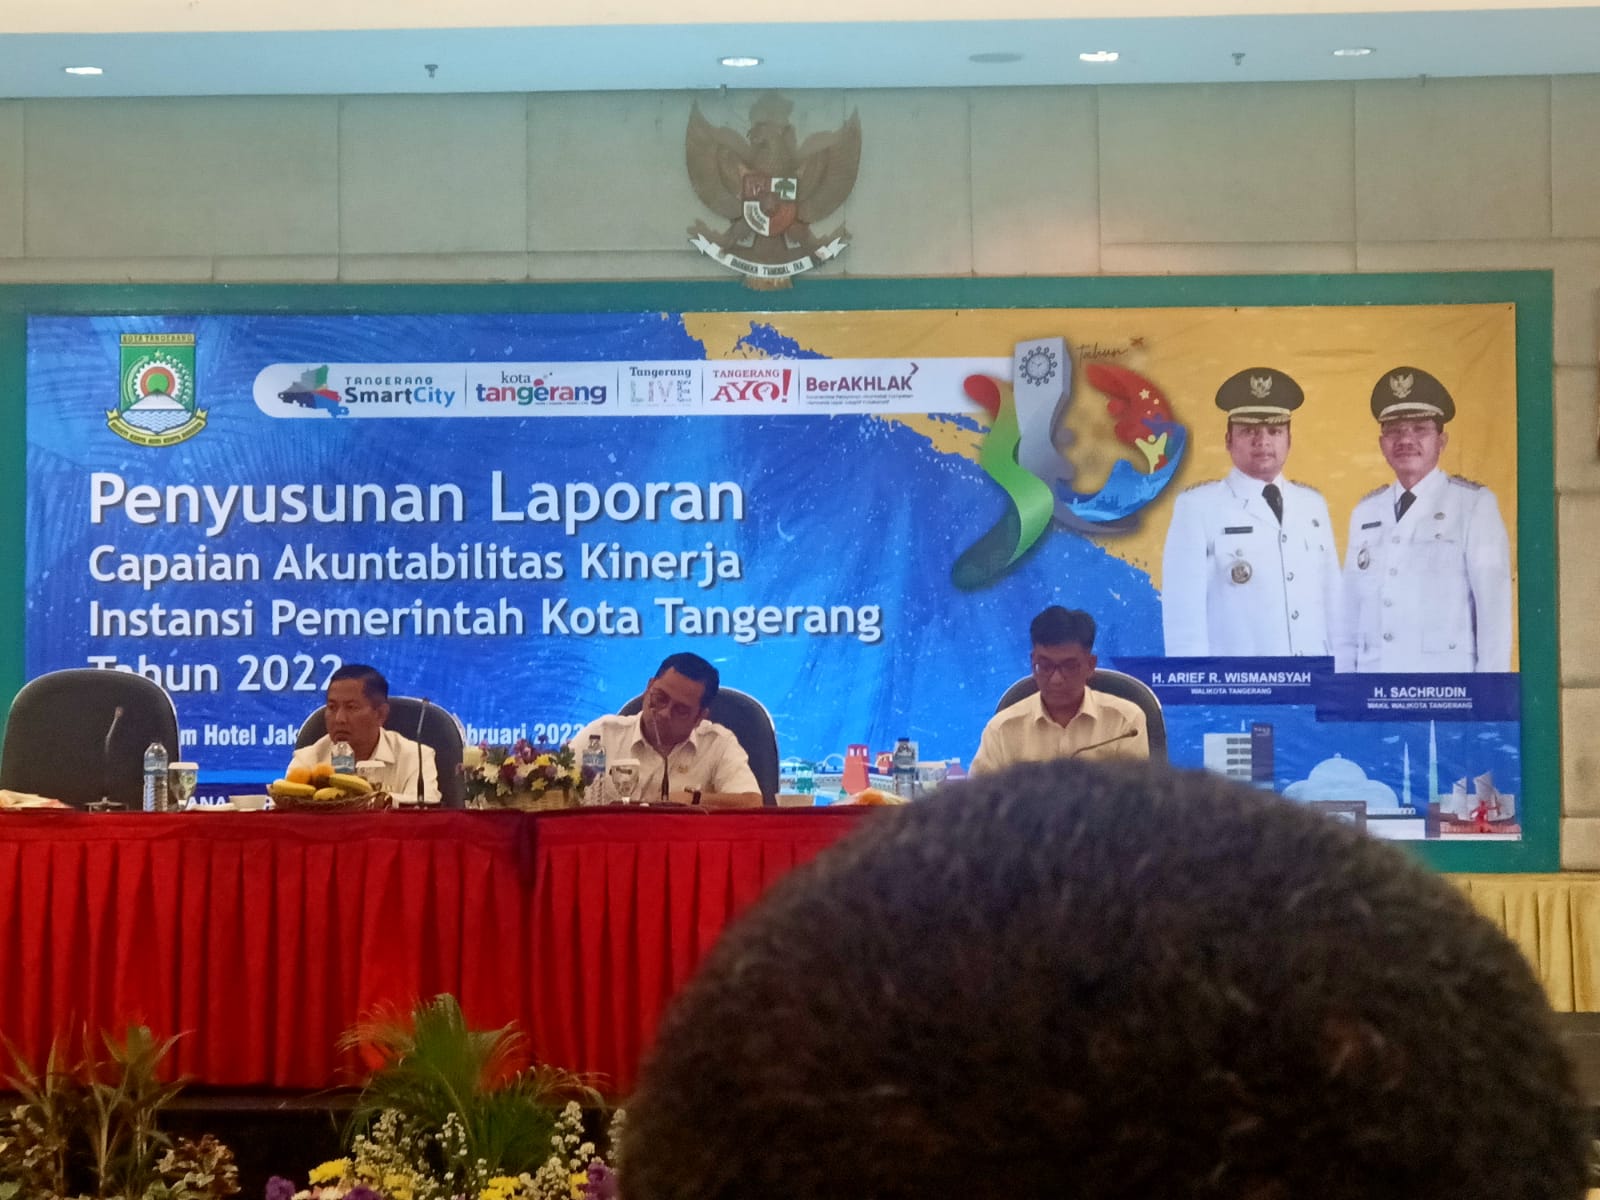 Menghadiri Penyusunan Laporan Capaian Akuntabilitas Kinerja Instansi Pemerintah Kota Tangerang Tahun 2022